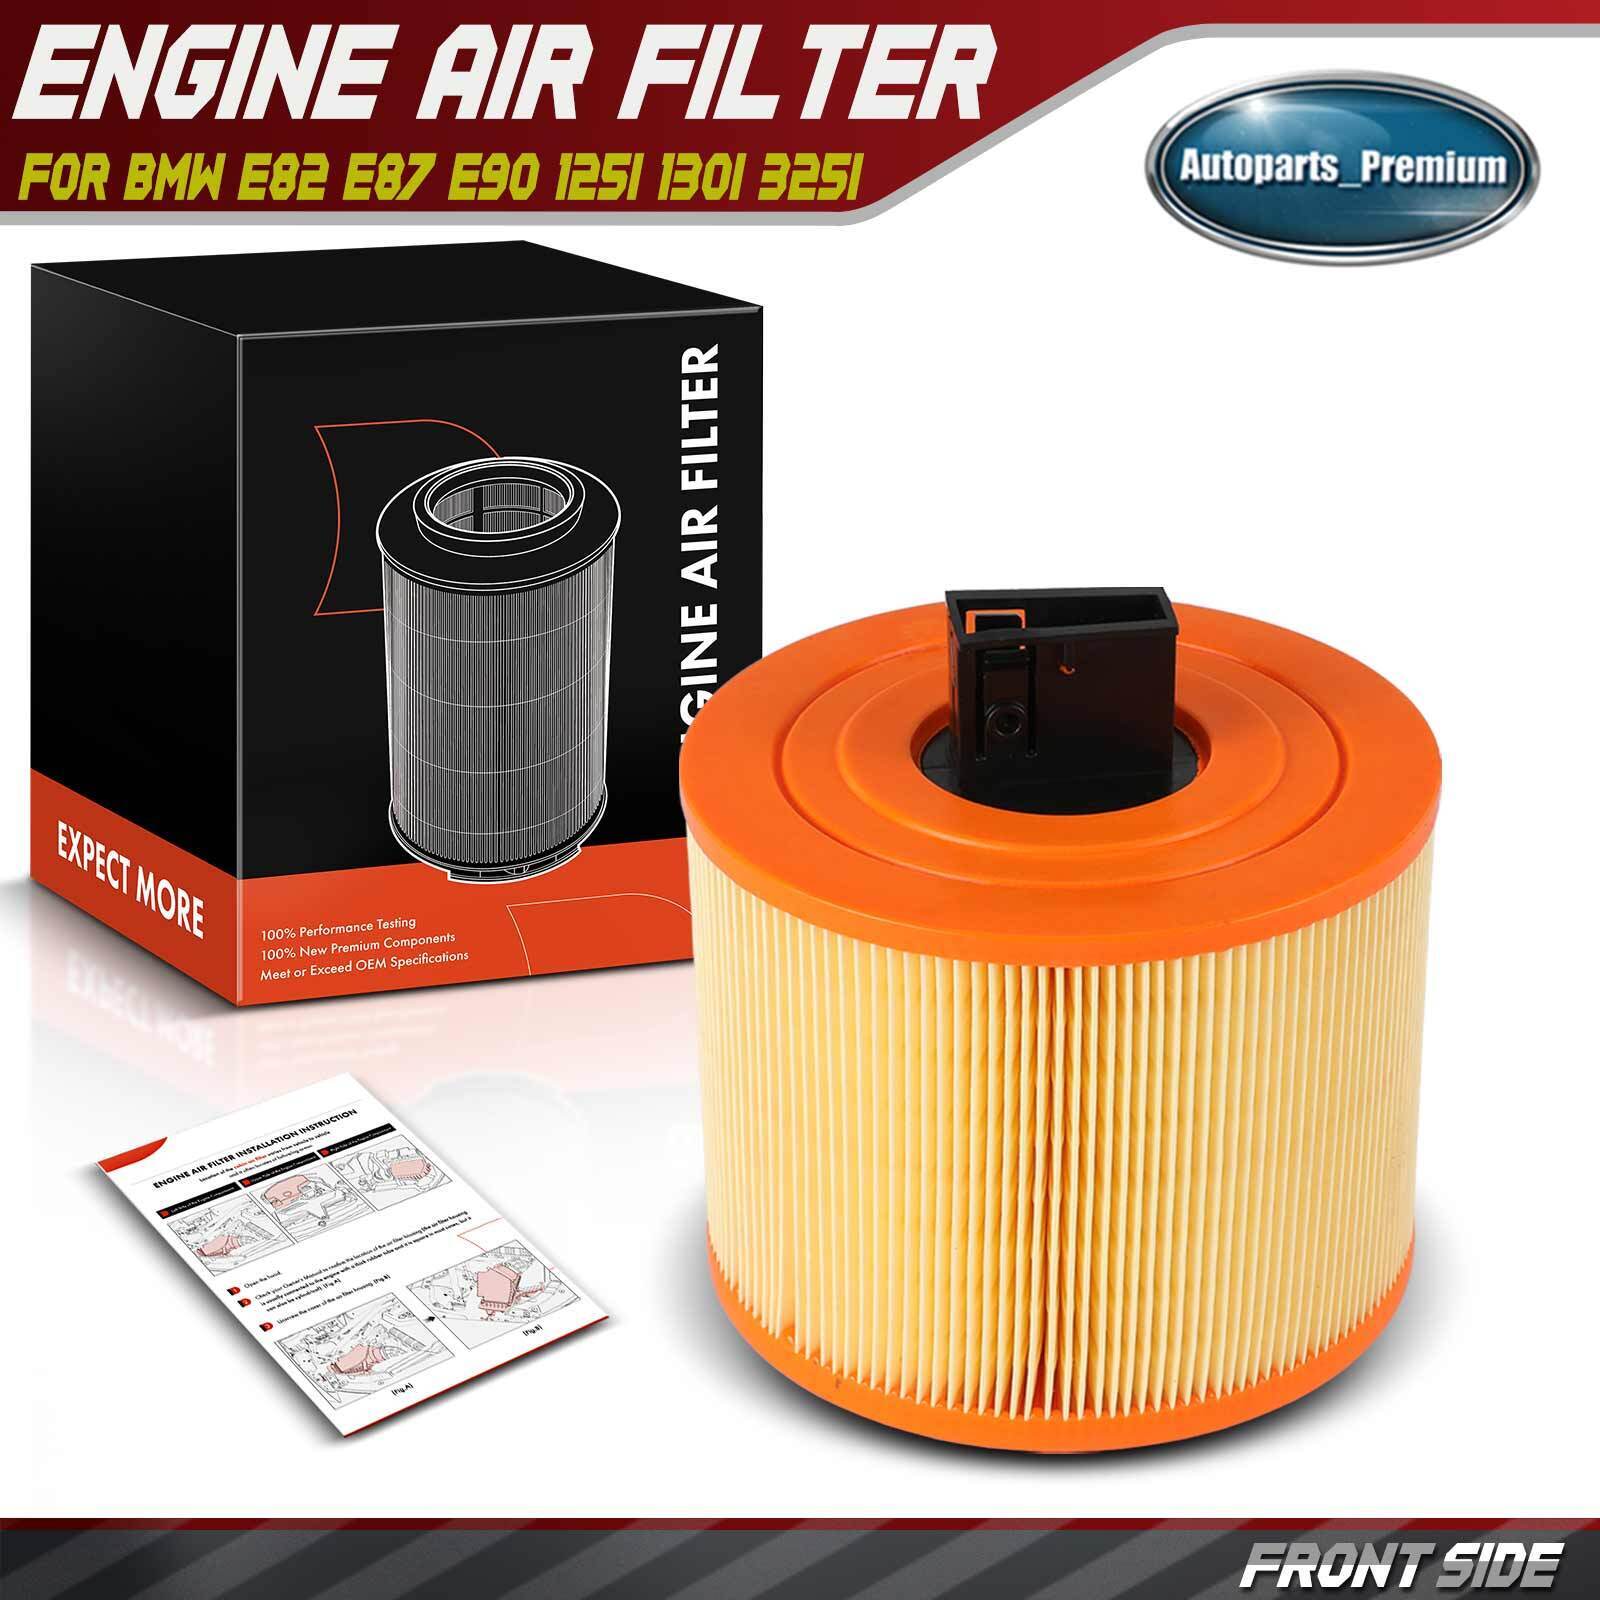 New Engine Air Filter for BMW E82 E87 E90 125i 130i 325i L6 2.5L L6 3.0L Mexico